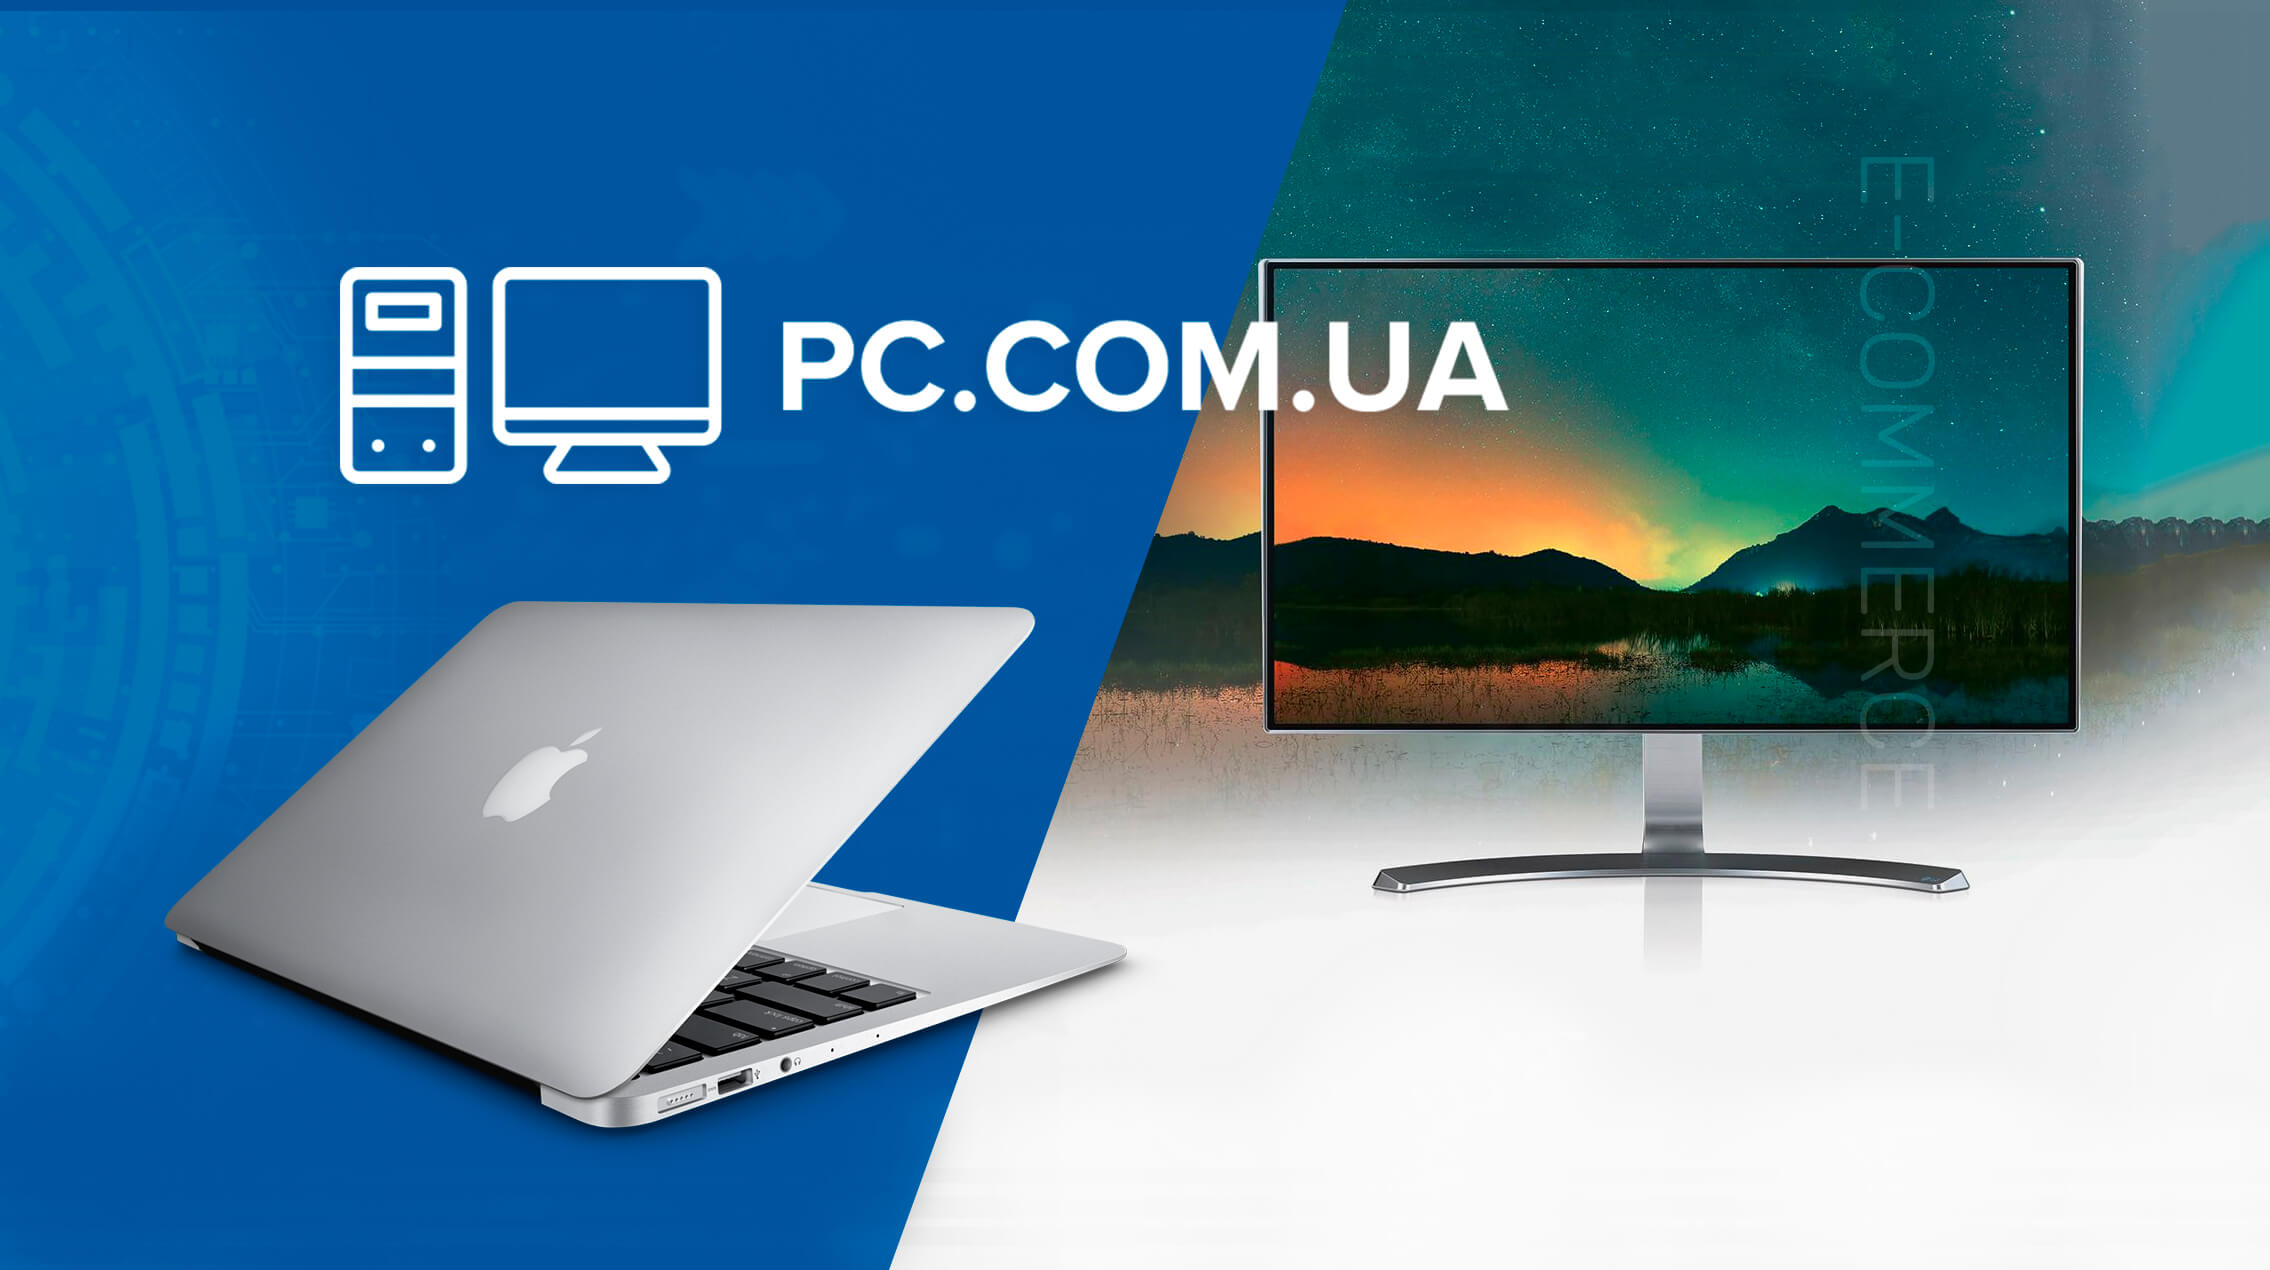 Разработка интернет-магазина компьютерной техники PC.com.ua